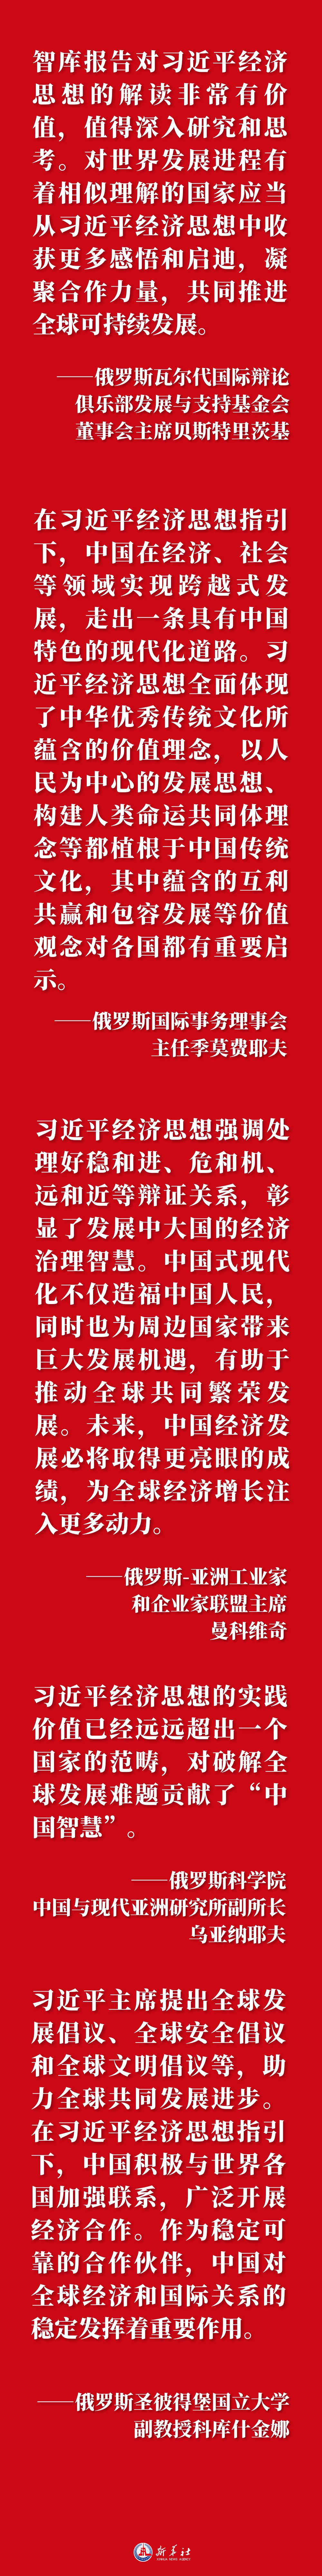 文图海报 | 中国发展奇迹的密码，在俄罗斯受到热议！